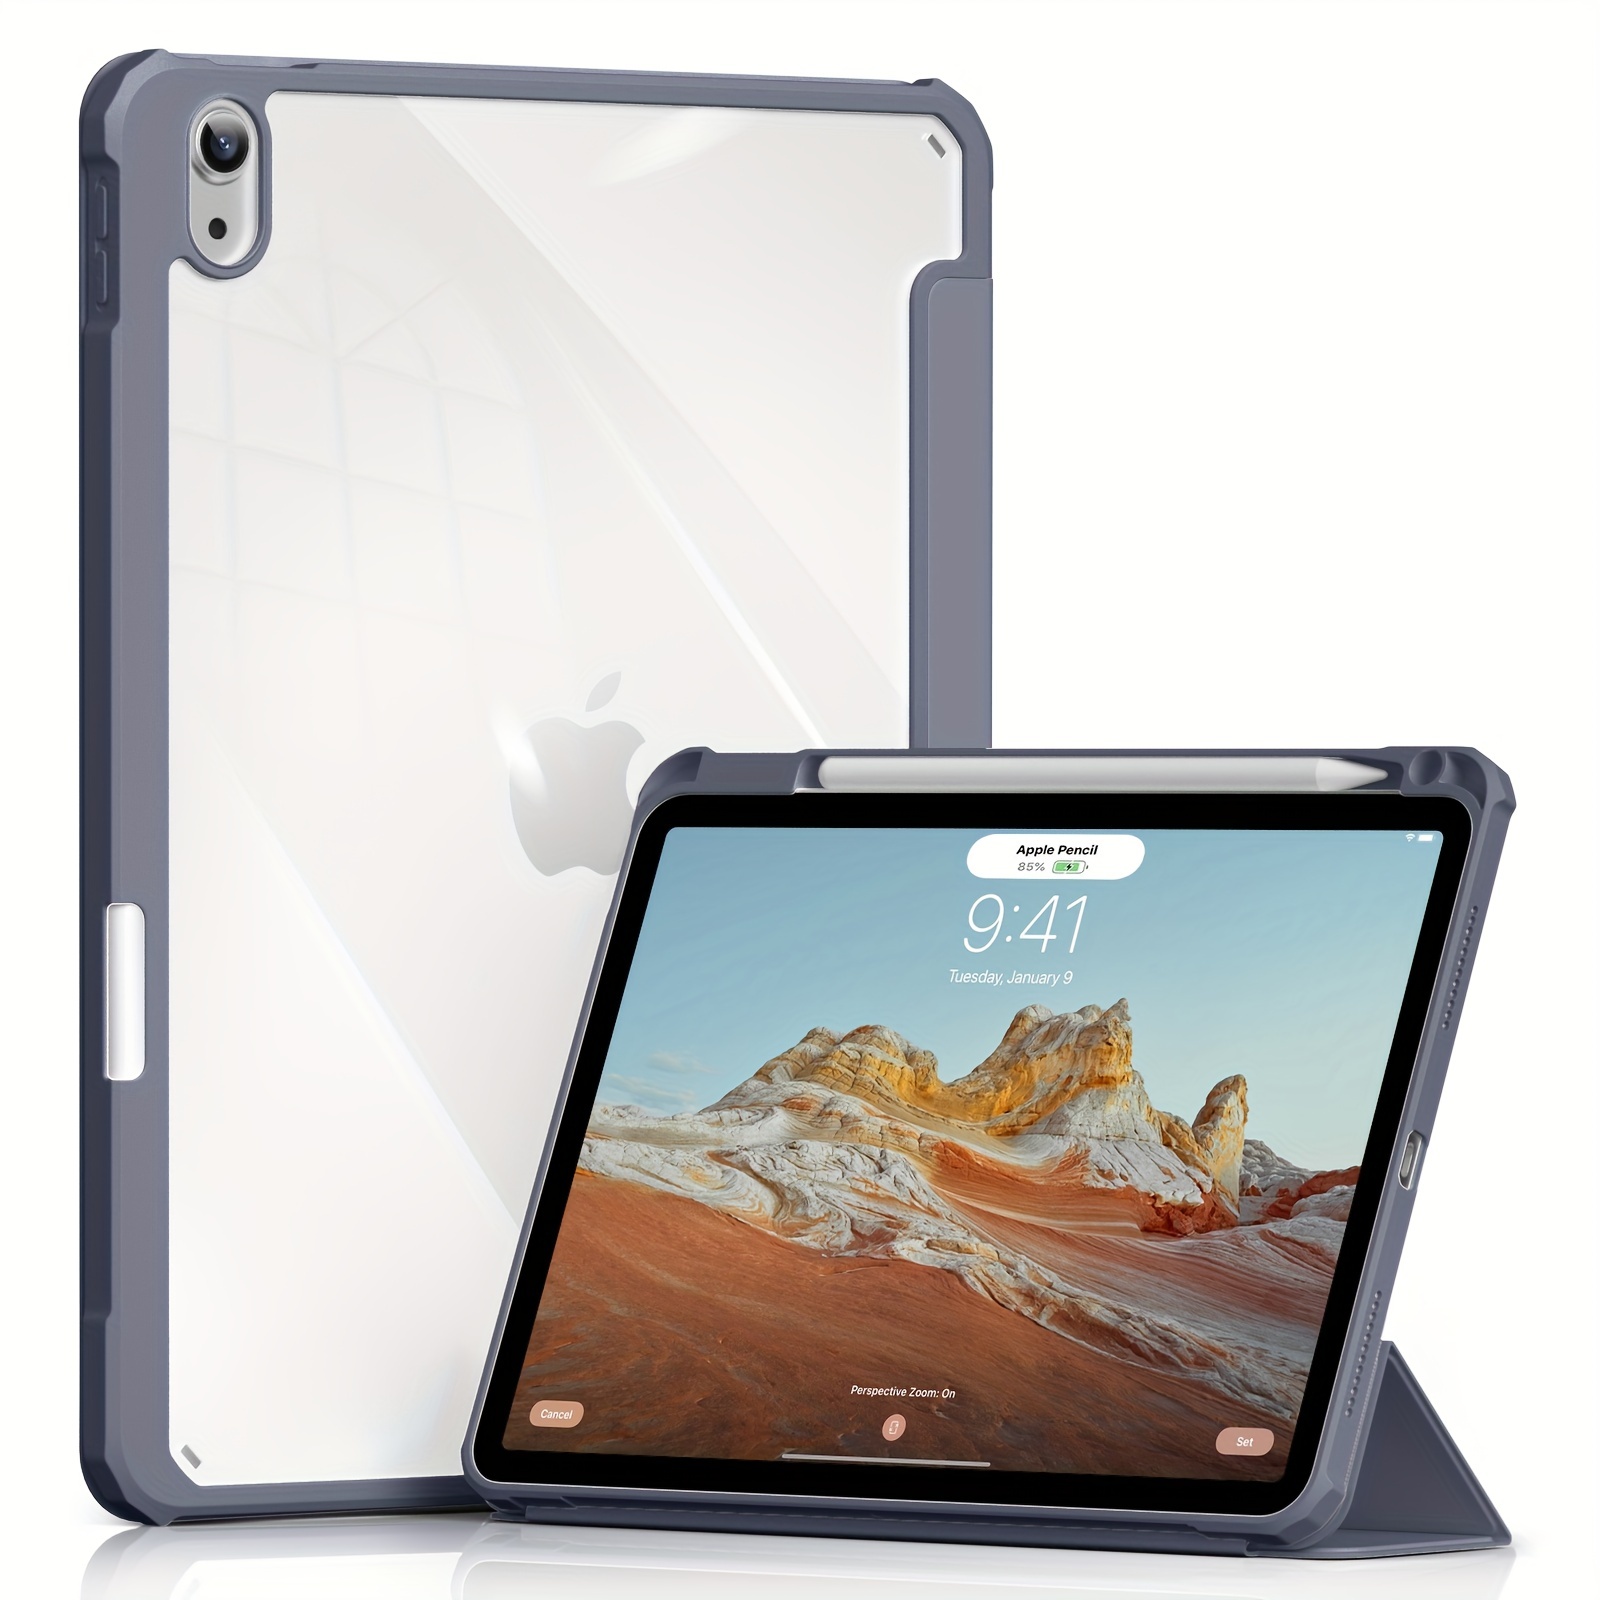 Coque iPad Air 5/4. iPad génération 2020 Tablette 10,9 pouces 2020, [2e  génération] support de charge iPencil de génération] étui en cuir PU housse  de protection arrière translucide veille/réveil automatique, bleu ciel